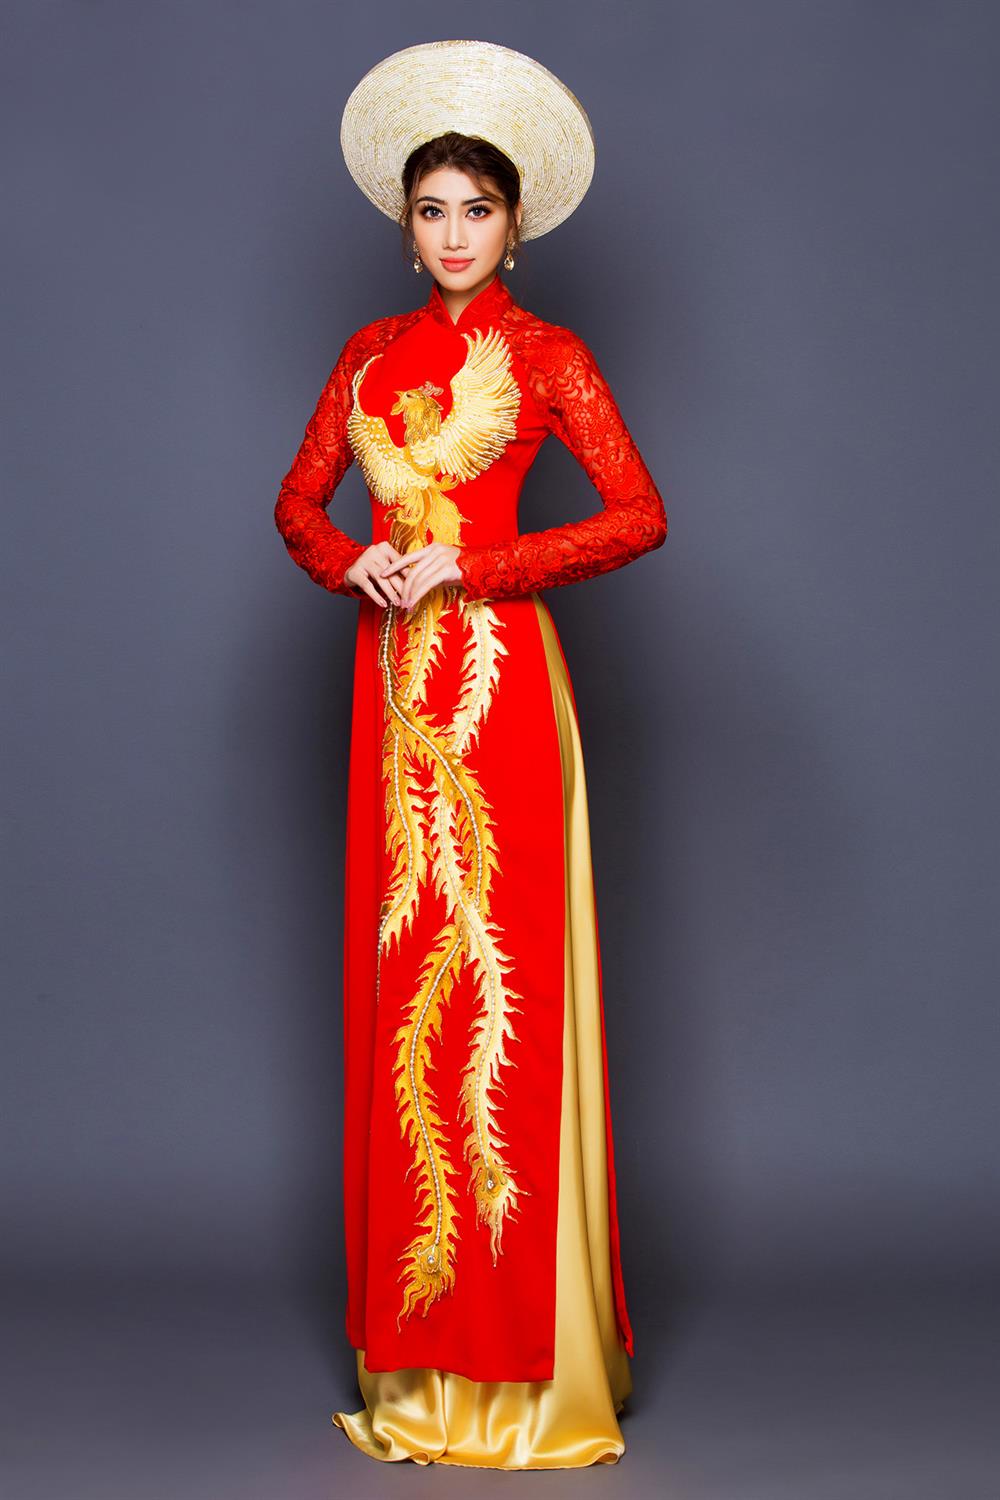 Trên chất liệu vải đặc biệt mềm mịn, NTK Minh Châu đã mạnh dạn áp dụng những kỹ thuật thêu, ghép và đính kết từ cổ điển cho đến hiện đại để cho ra những tác phẩm nghệ thuật tinh xảo và đặc sắc, tựa như những bức tranh thêu lung linh huyền ảo  trên thân chiếc áo dài.